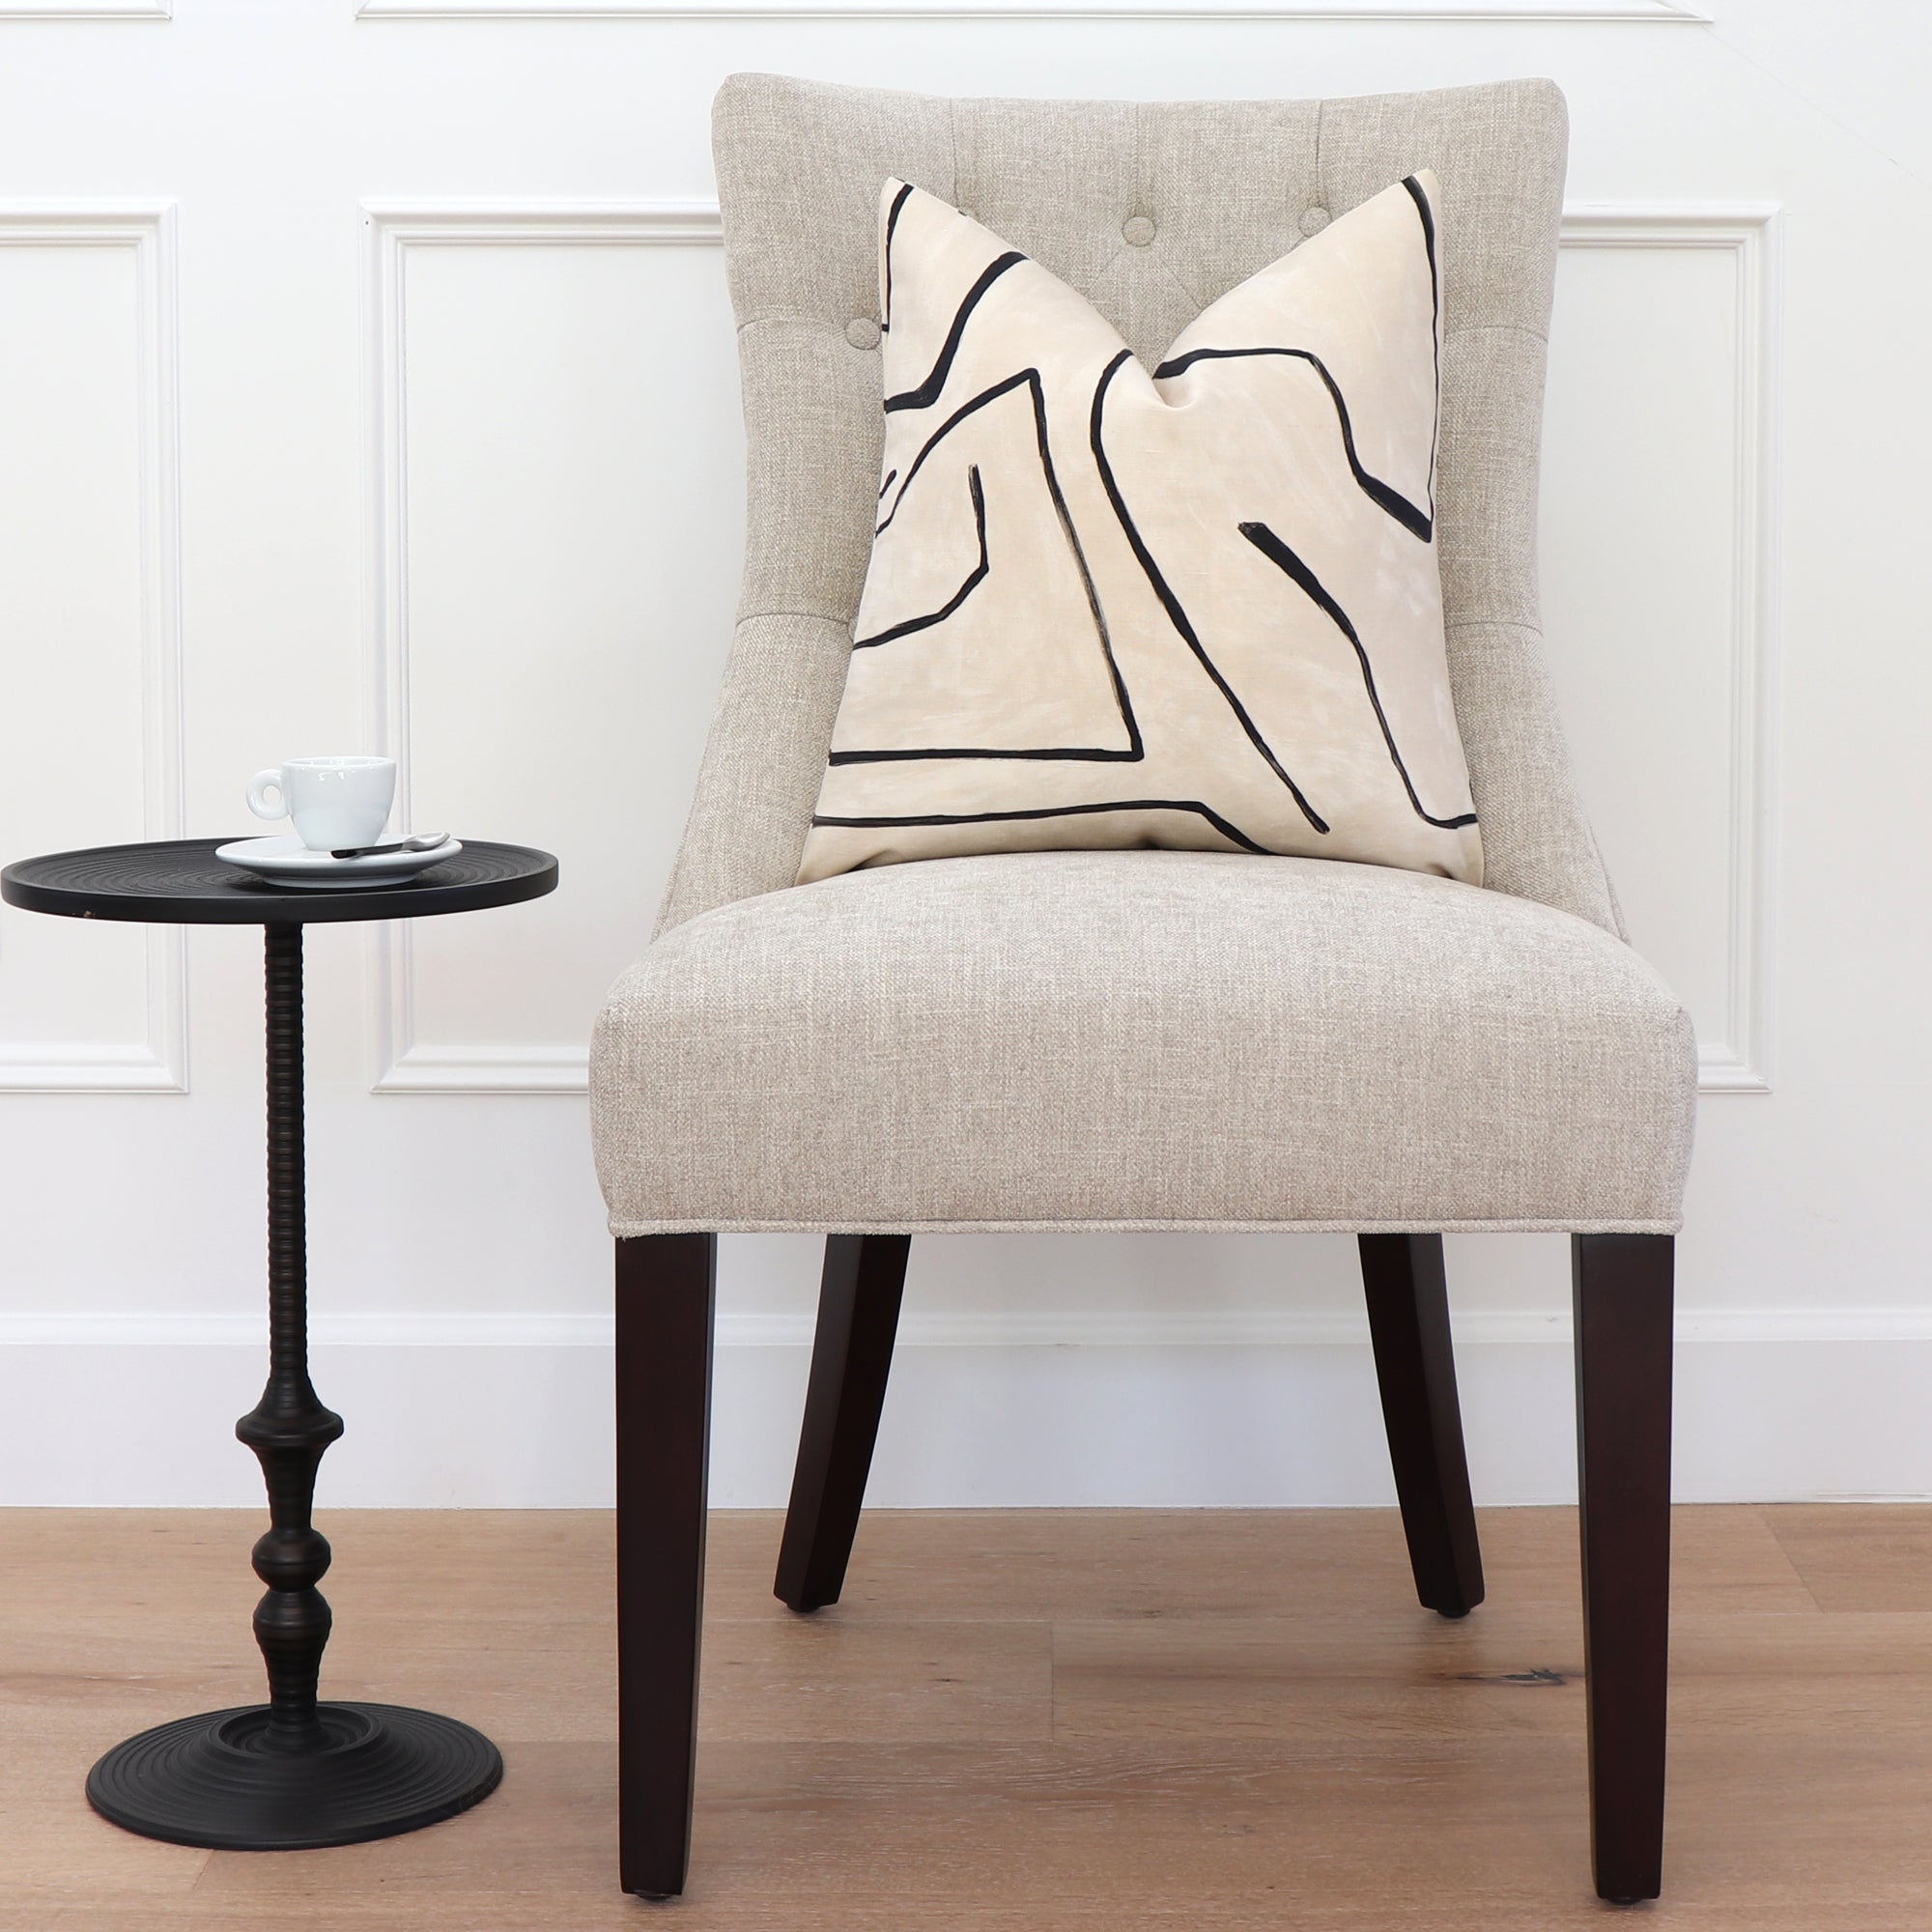 Kelly Wearstler Graffito Linen Onyx Designer Throw Pillow on Dining Chair